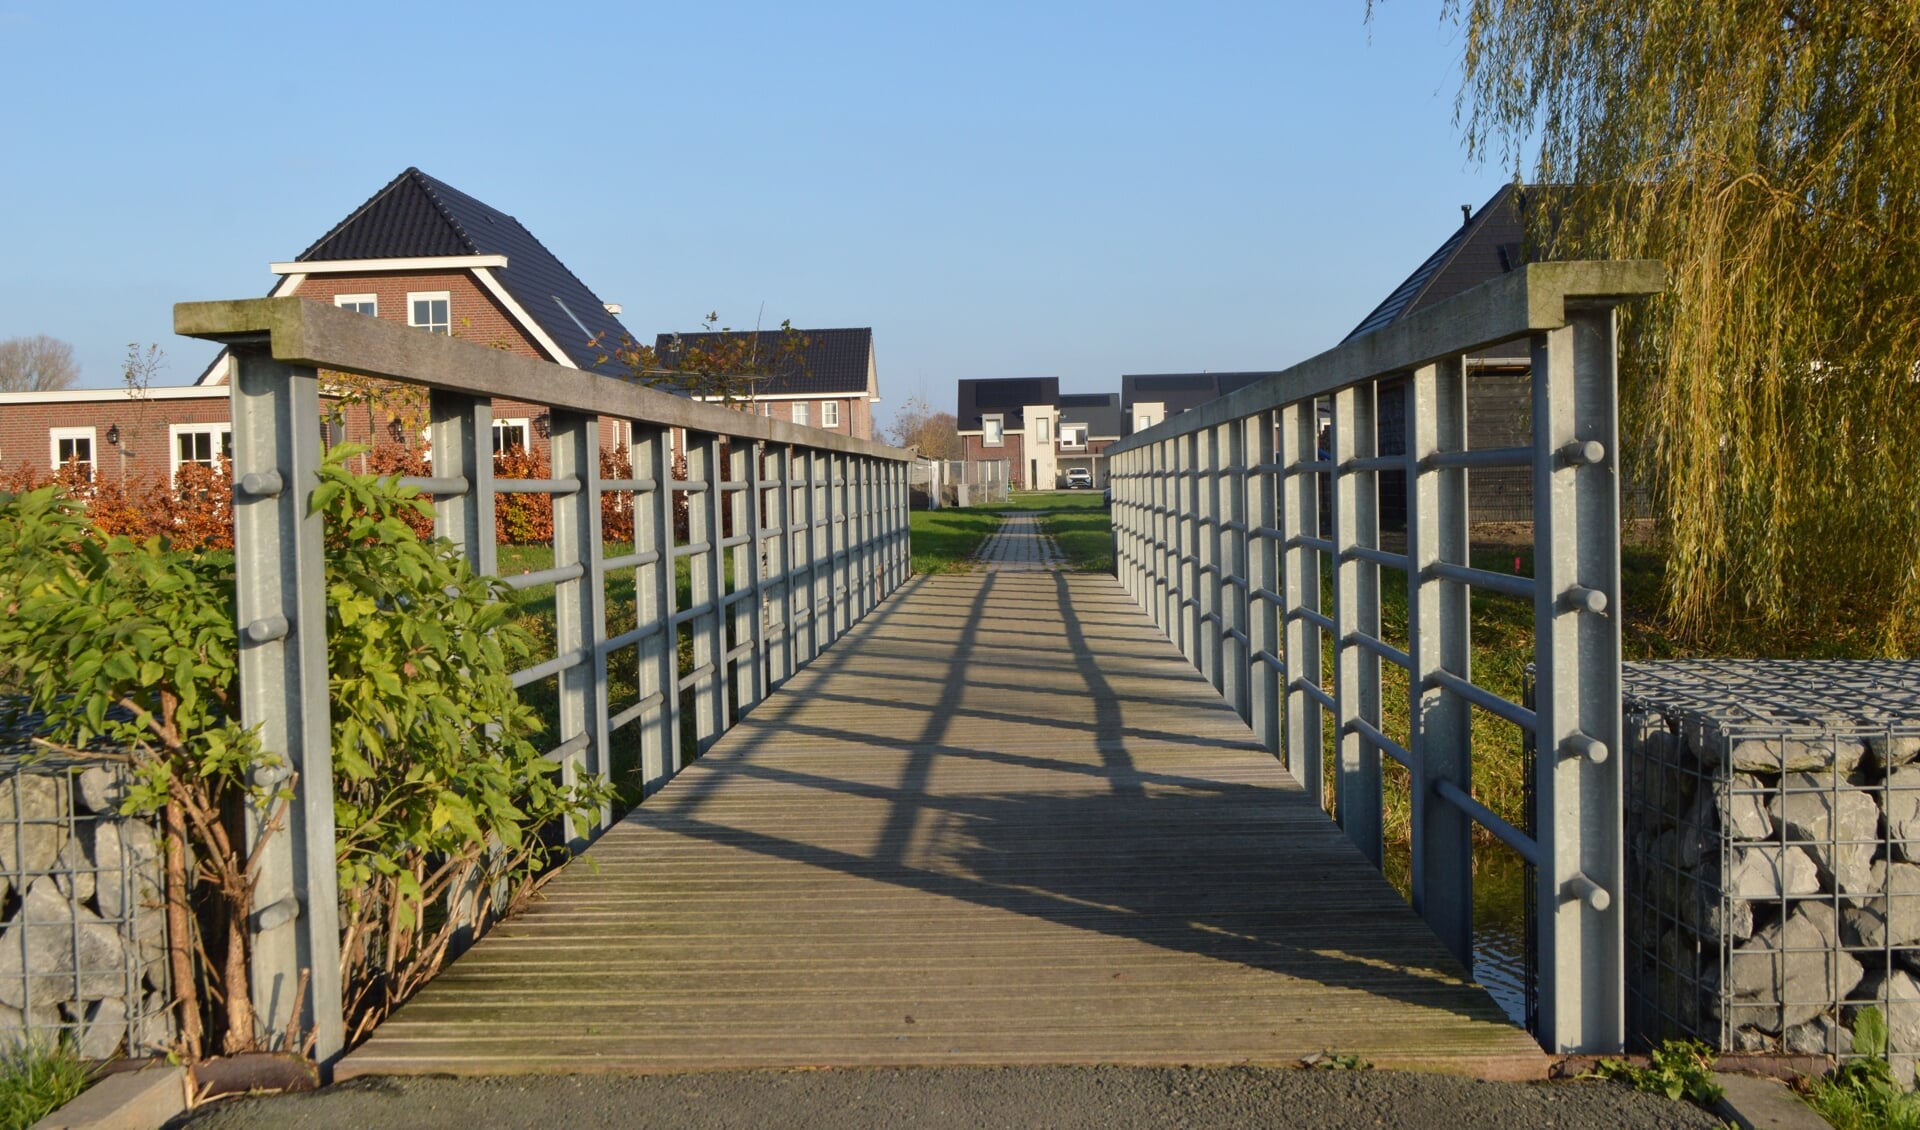 Nieuwbouwwijk De Graafschap in Biddinghuizen.